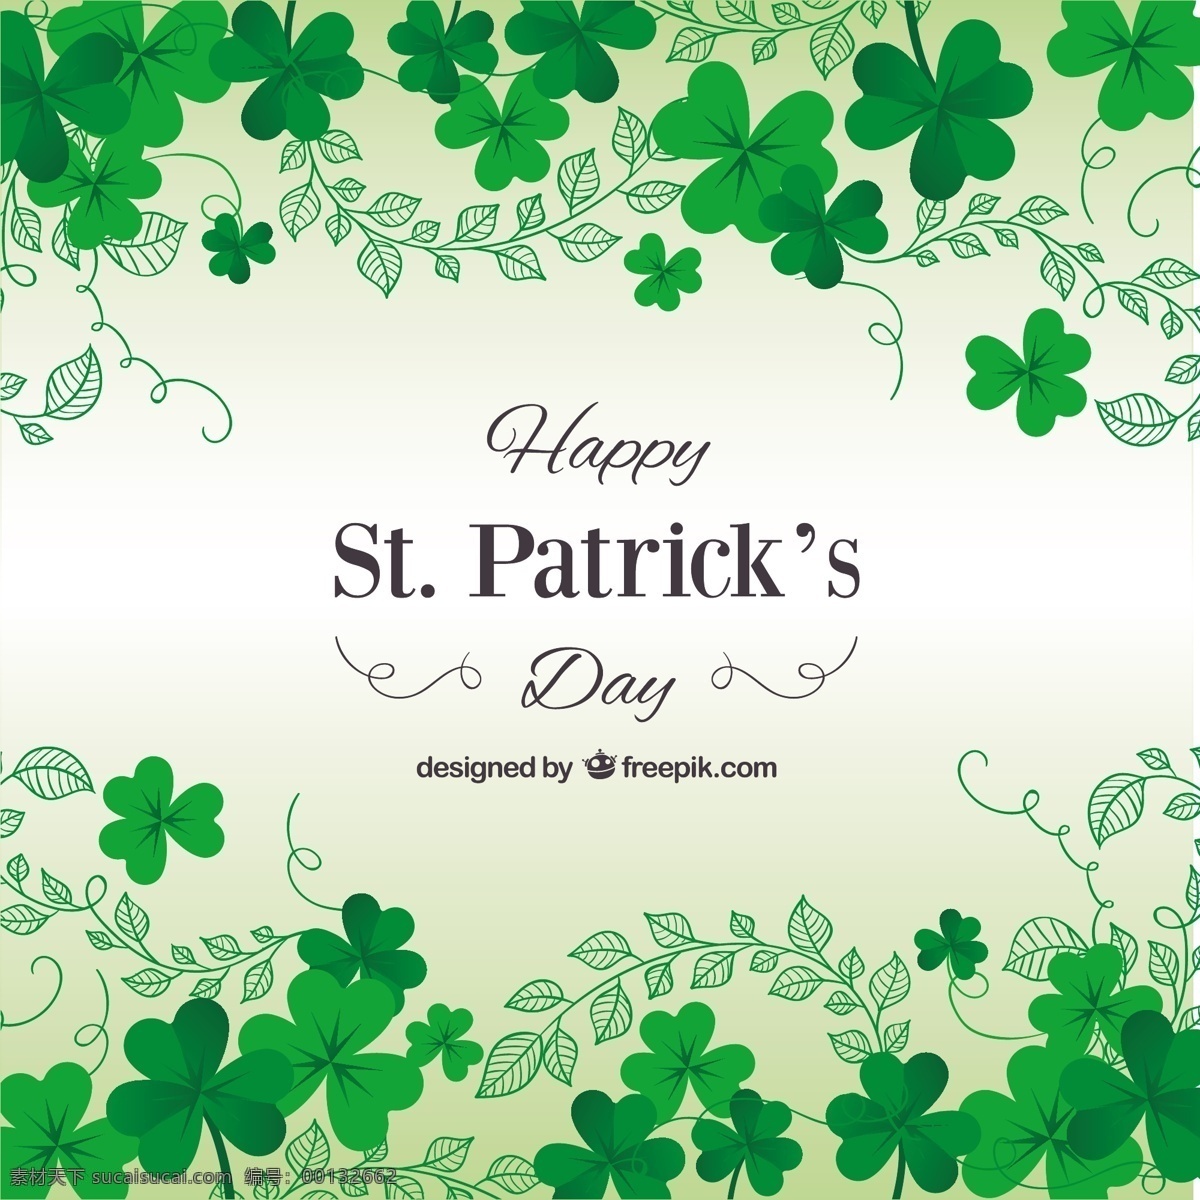 圣帕特里克 日 卡 三叶草 架 边境 绿色的节日 圣帕特里克日 好 爱尔兰人 问候 一天 运气 爱尔兰 好运 帕特里克 白色